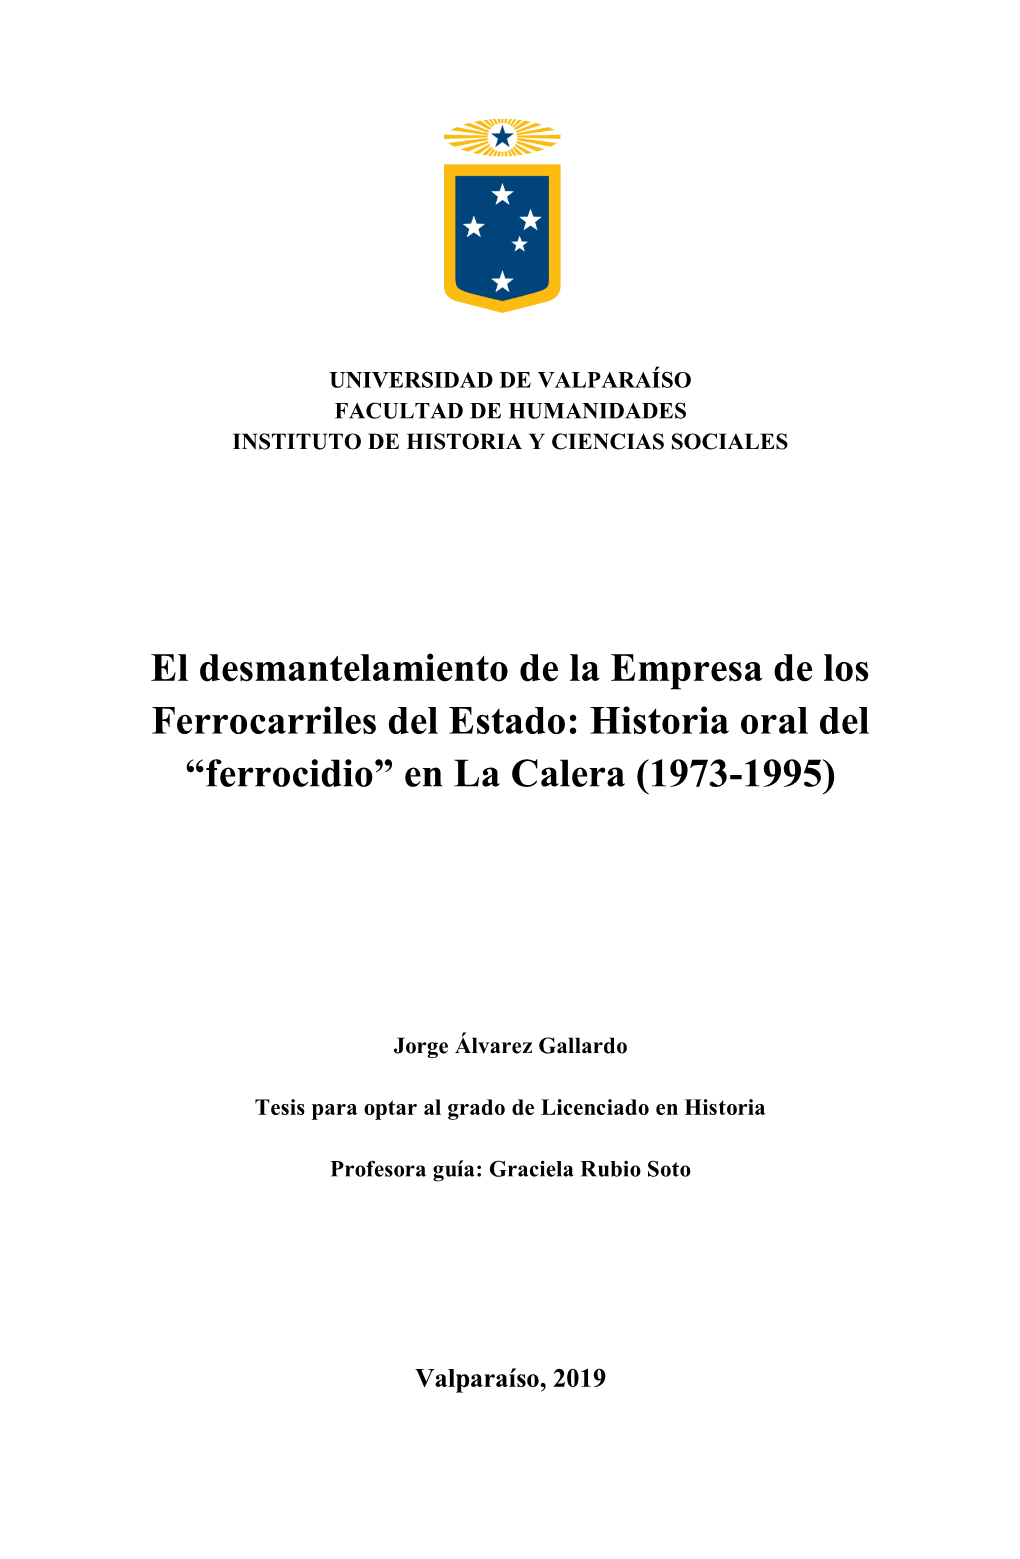 El Desmantelamiento De La Empresa De Los Ferrocarriles Del Estado: Historia Oral Del “Ferrocidio” En La Calera (1973-1995)